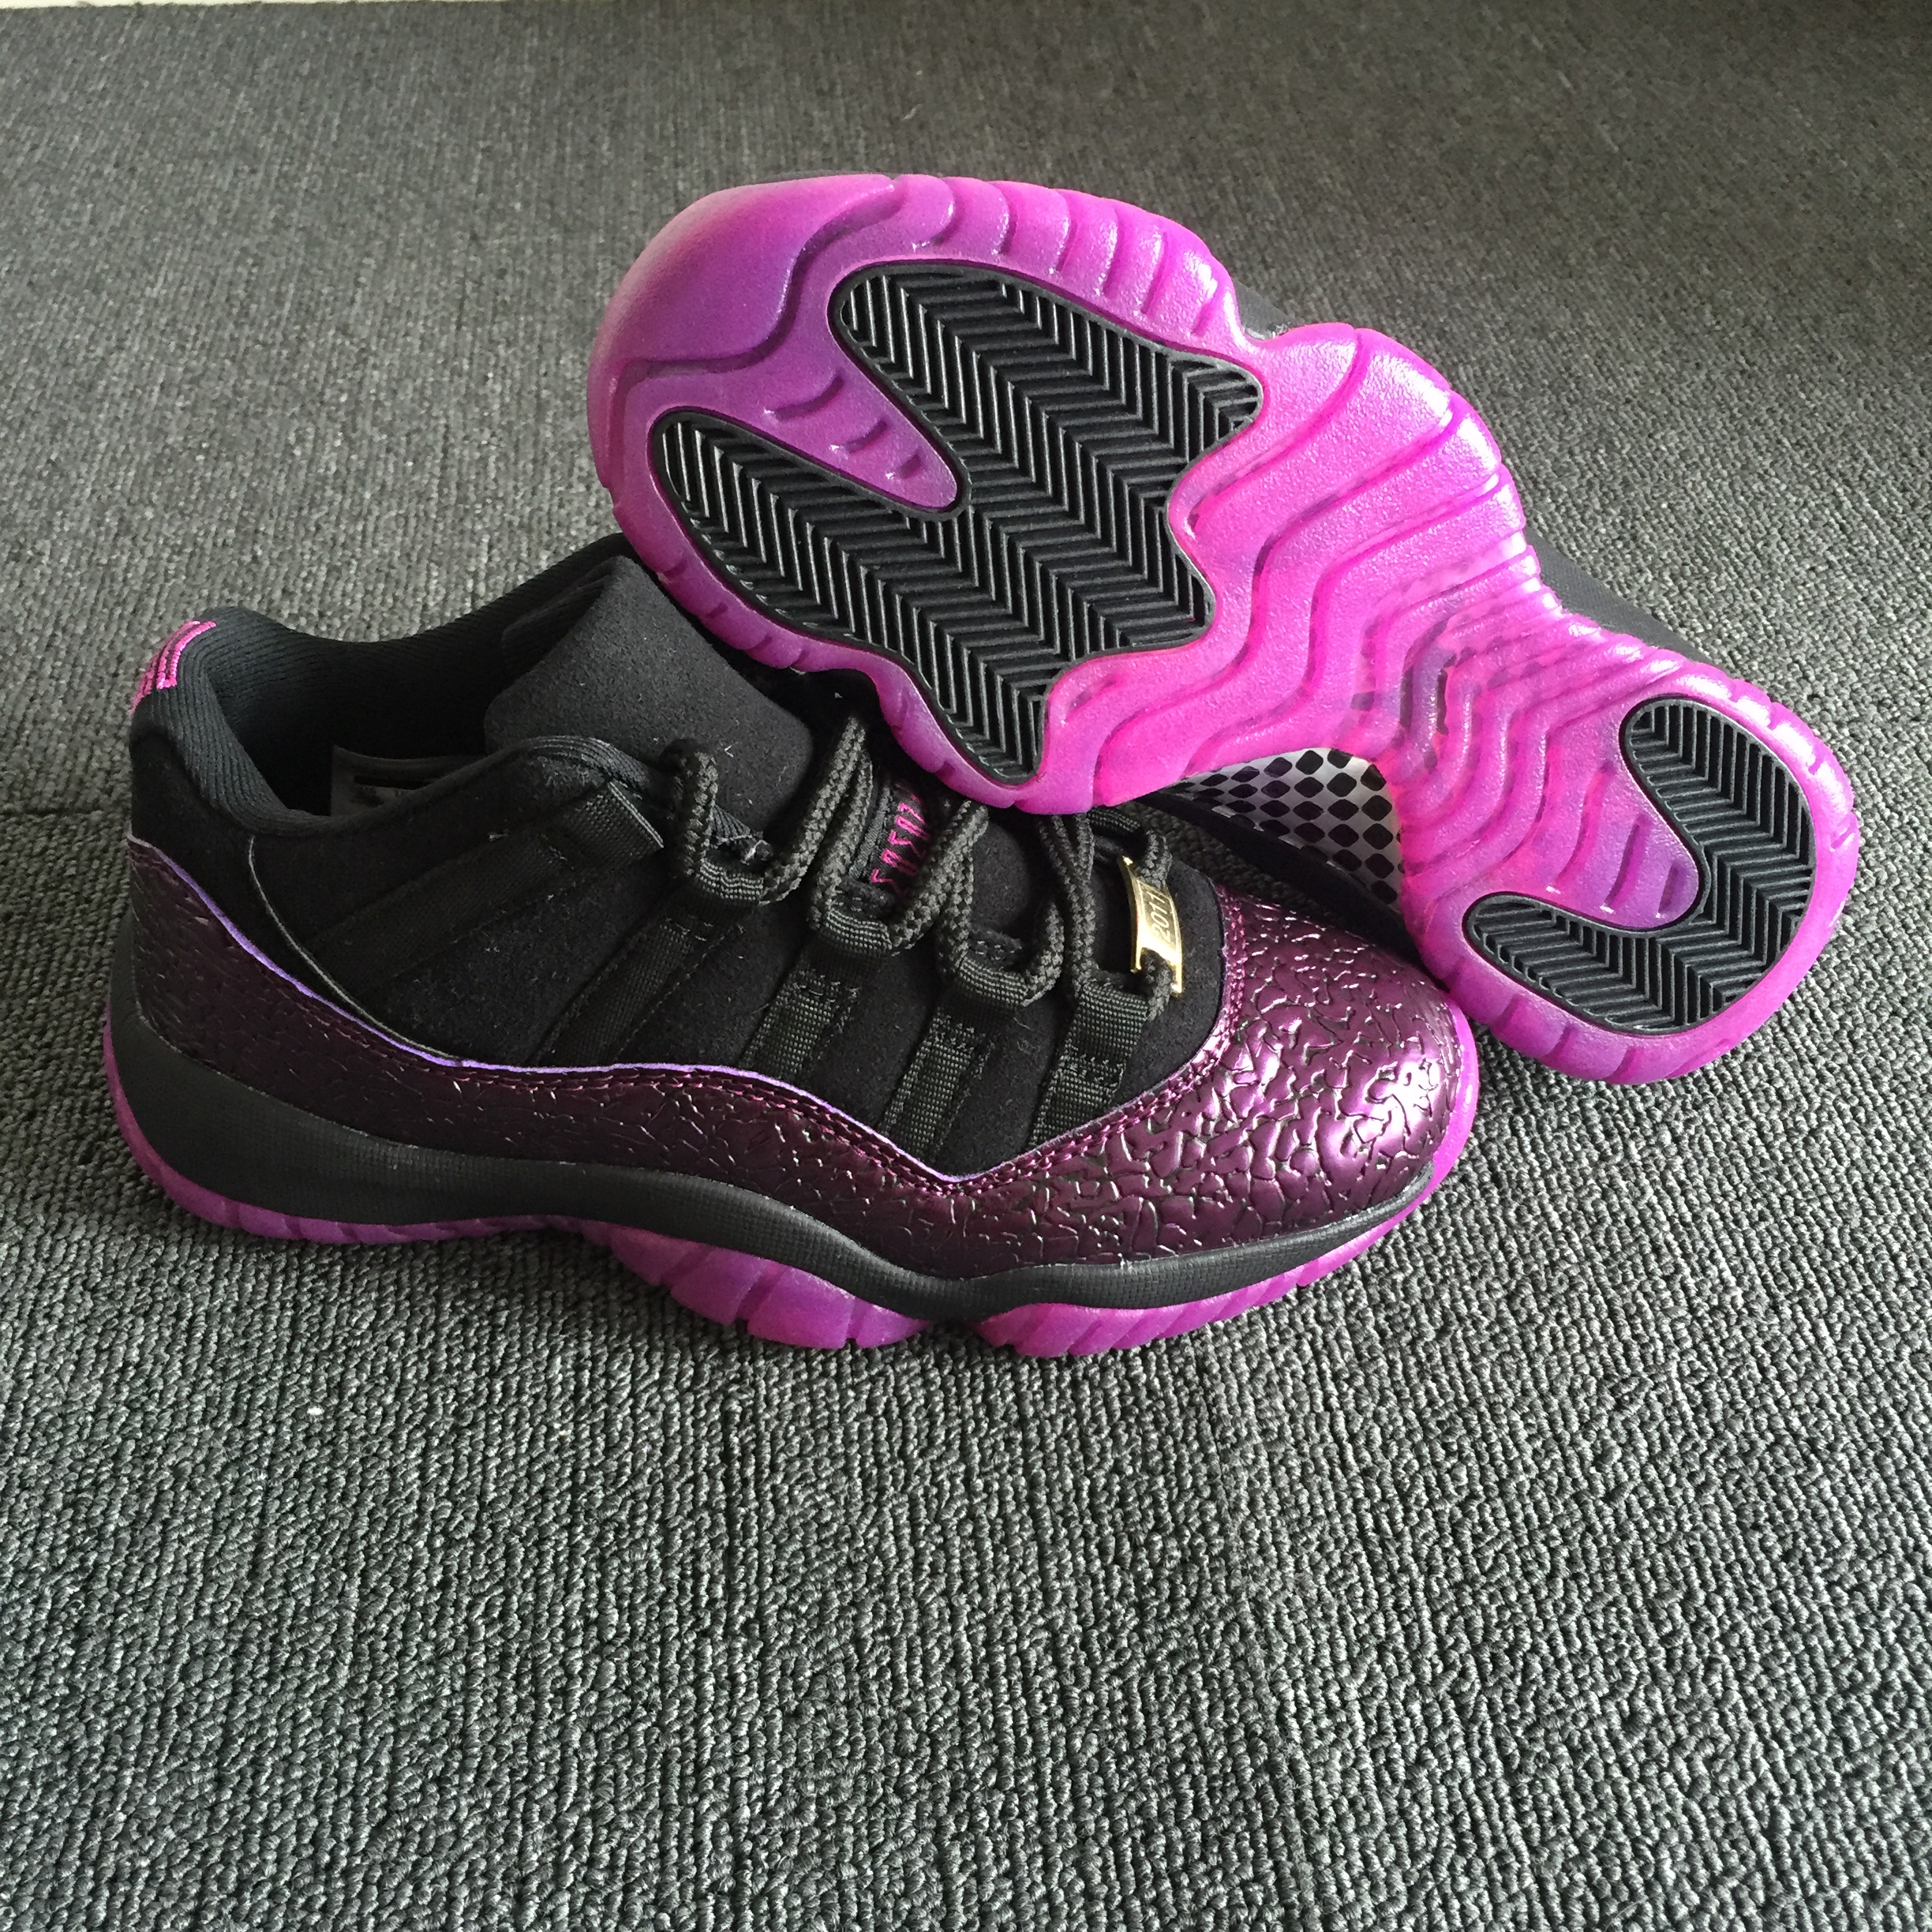 Women Air Jordan 11 Crack Black Pink Shoes